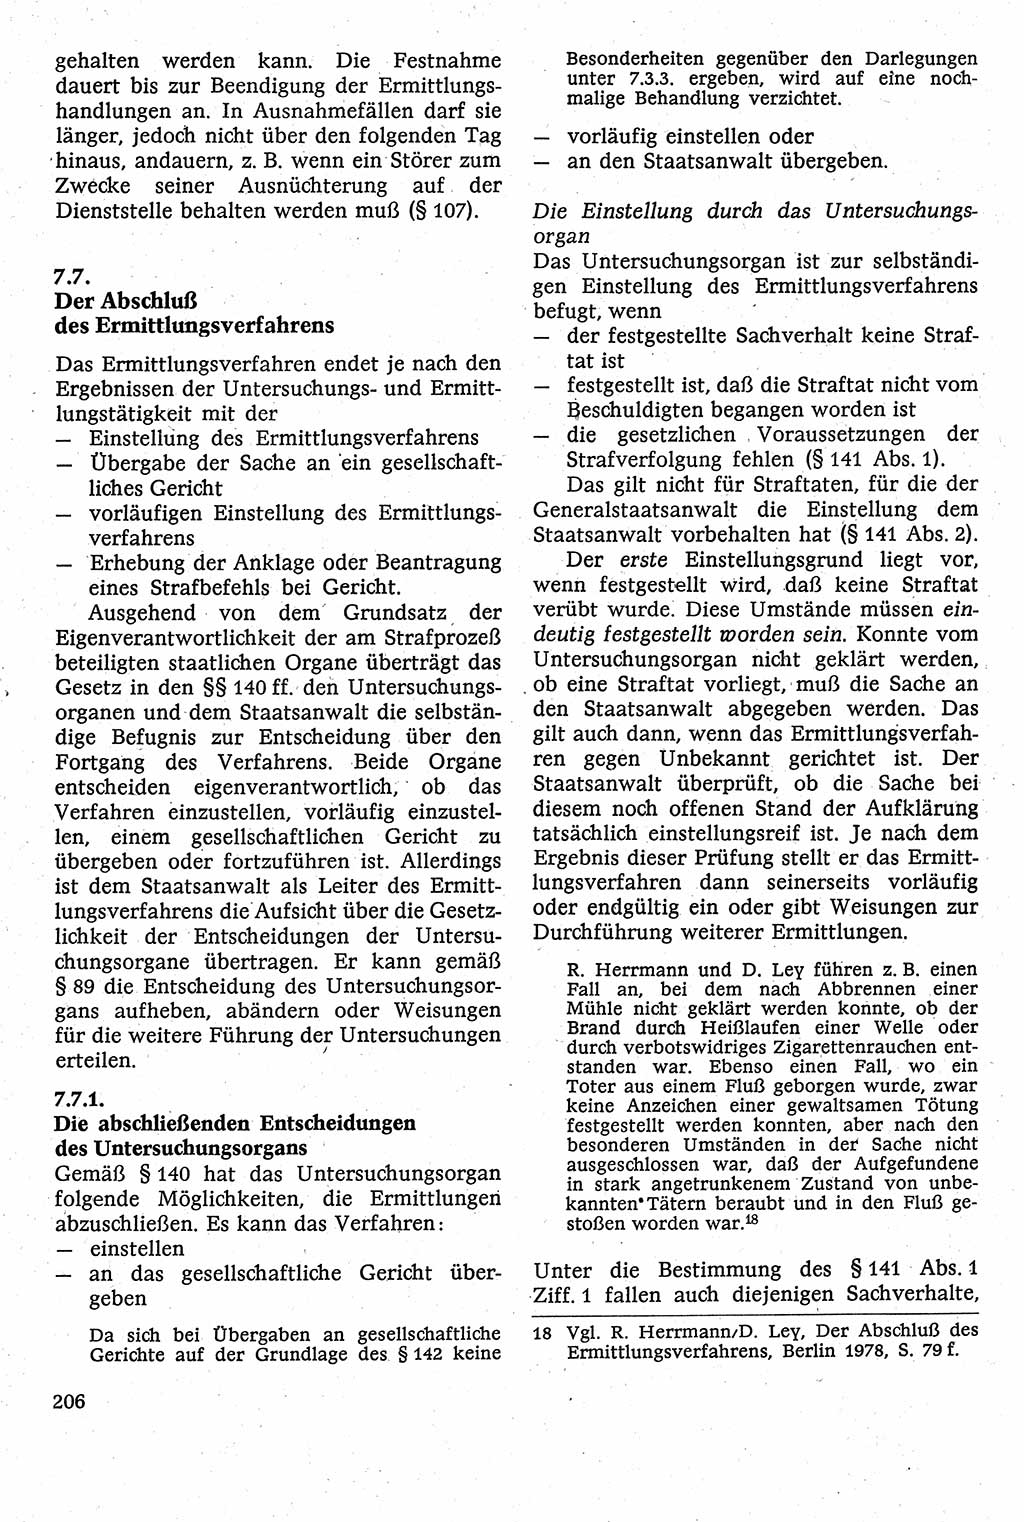 Strafverfahrensrecht [Deutsche Demokratische Republik (DDR)], Lehrbuch 1982, Seite 206 (Strafverf.-R. DDR Lb. 1982, S. 206)